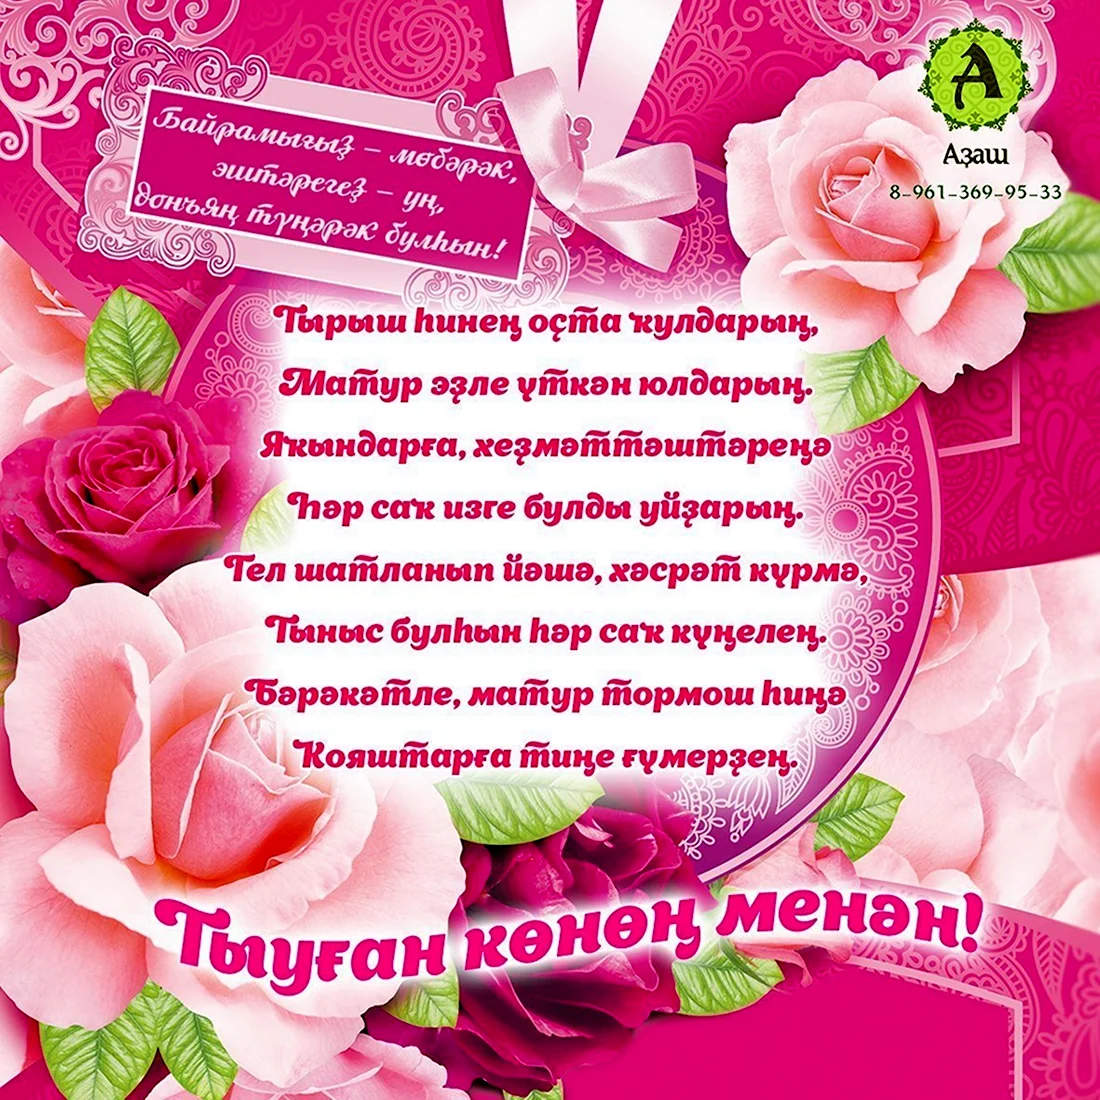 Поздравления с днём рождения на башкирском языке открытка